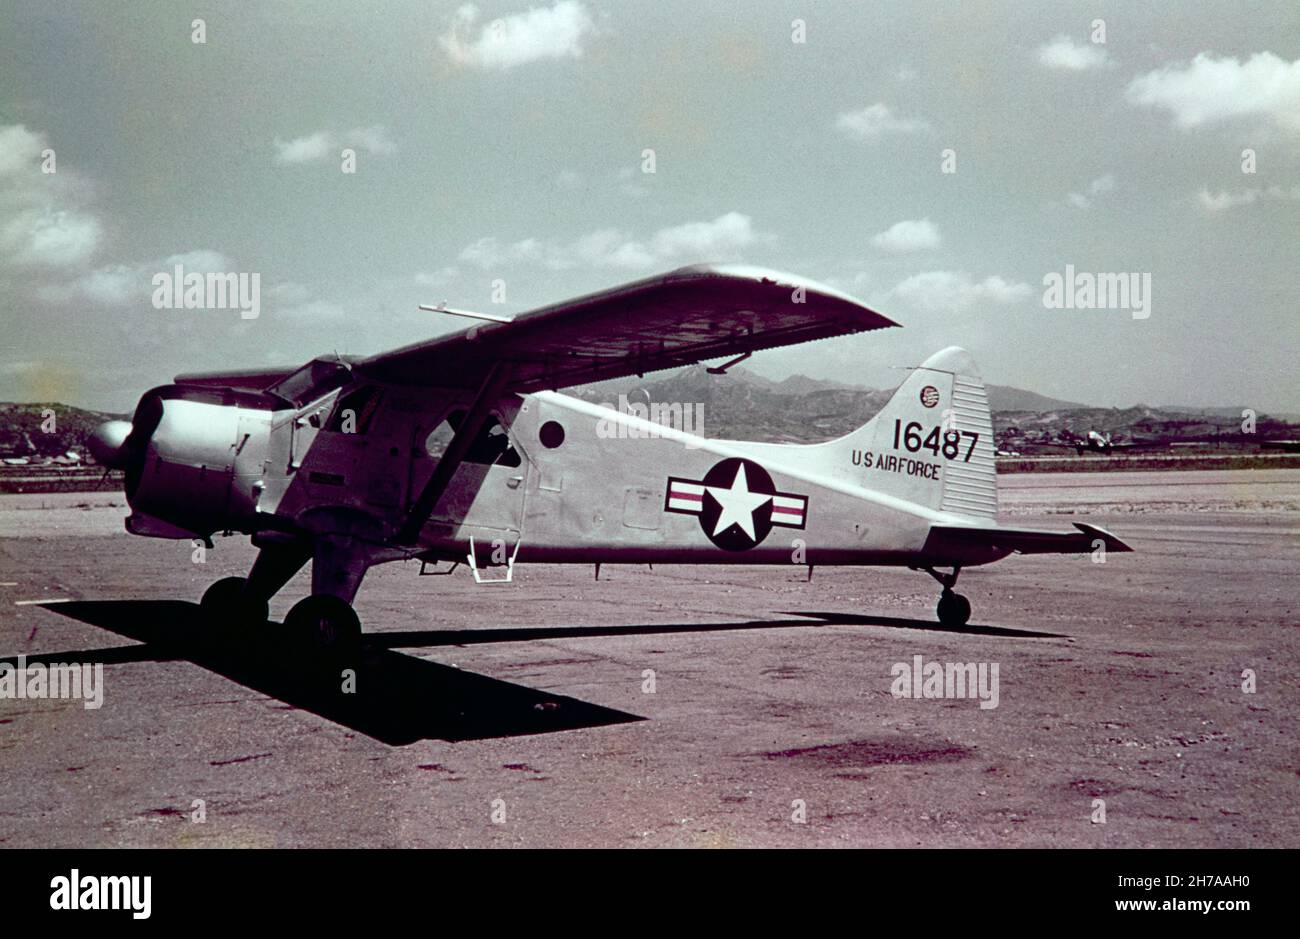 Farbfoto eines De Havilland Canada DHC-2 L-20 Beaver, Seriennummer 51-6487 der US-Luftwaffe, aufgenommen in Seoul während des Koreakrieges, 1953 oder 1954. Stockfoto